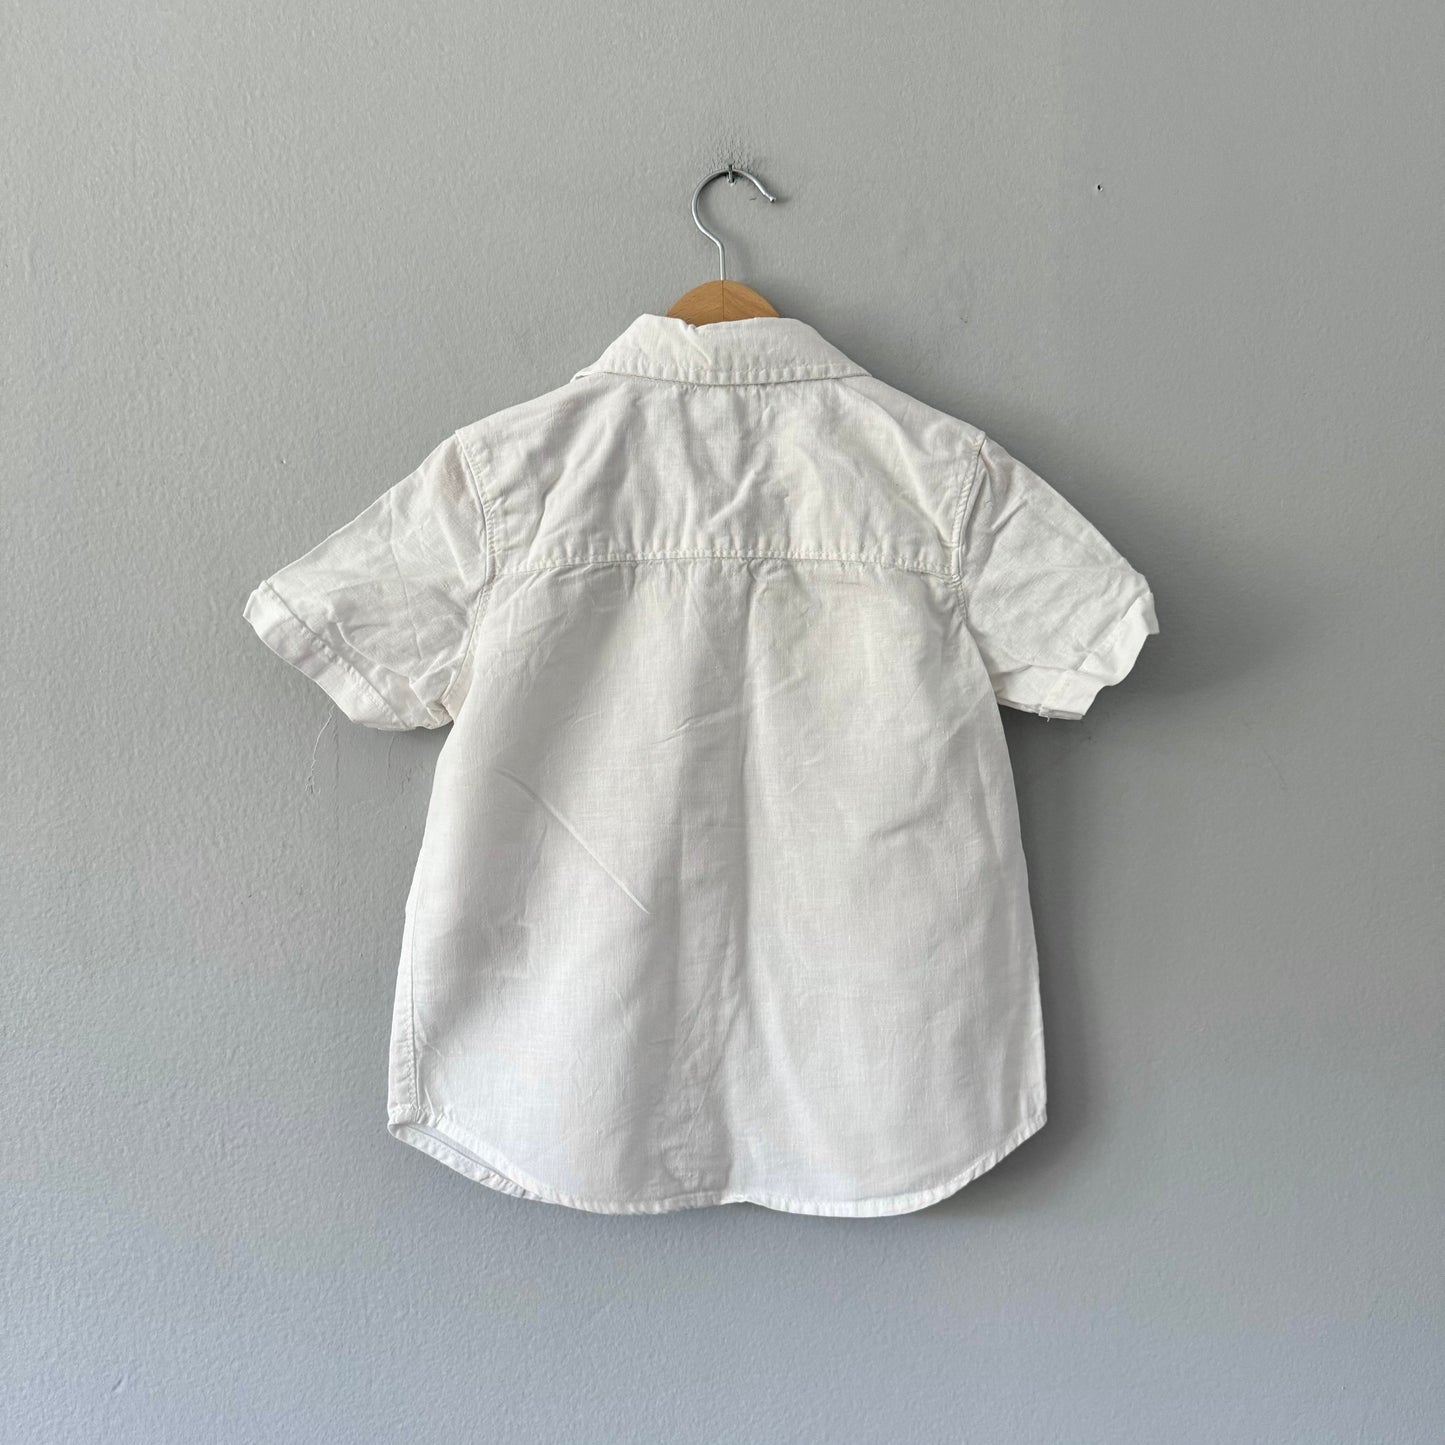 Old Navy / Linen mix short sleeve shirt / 4T